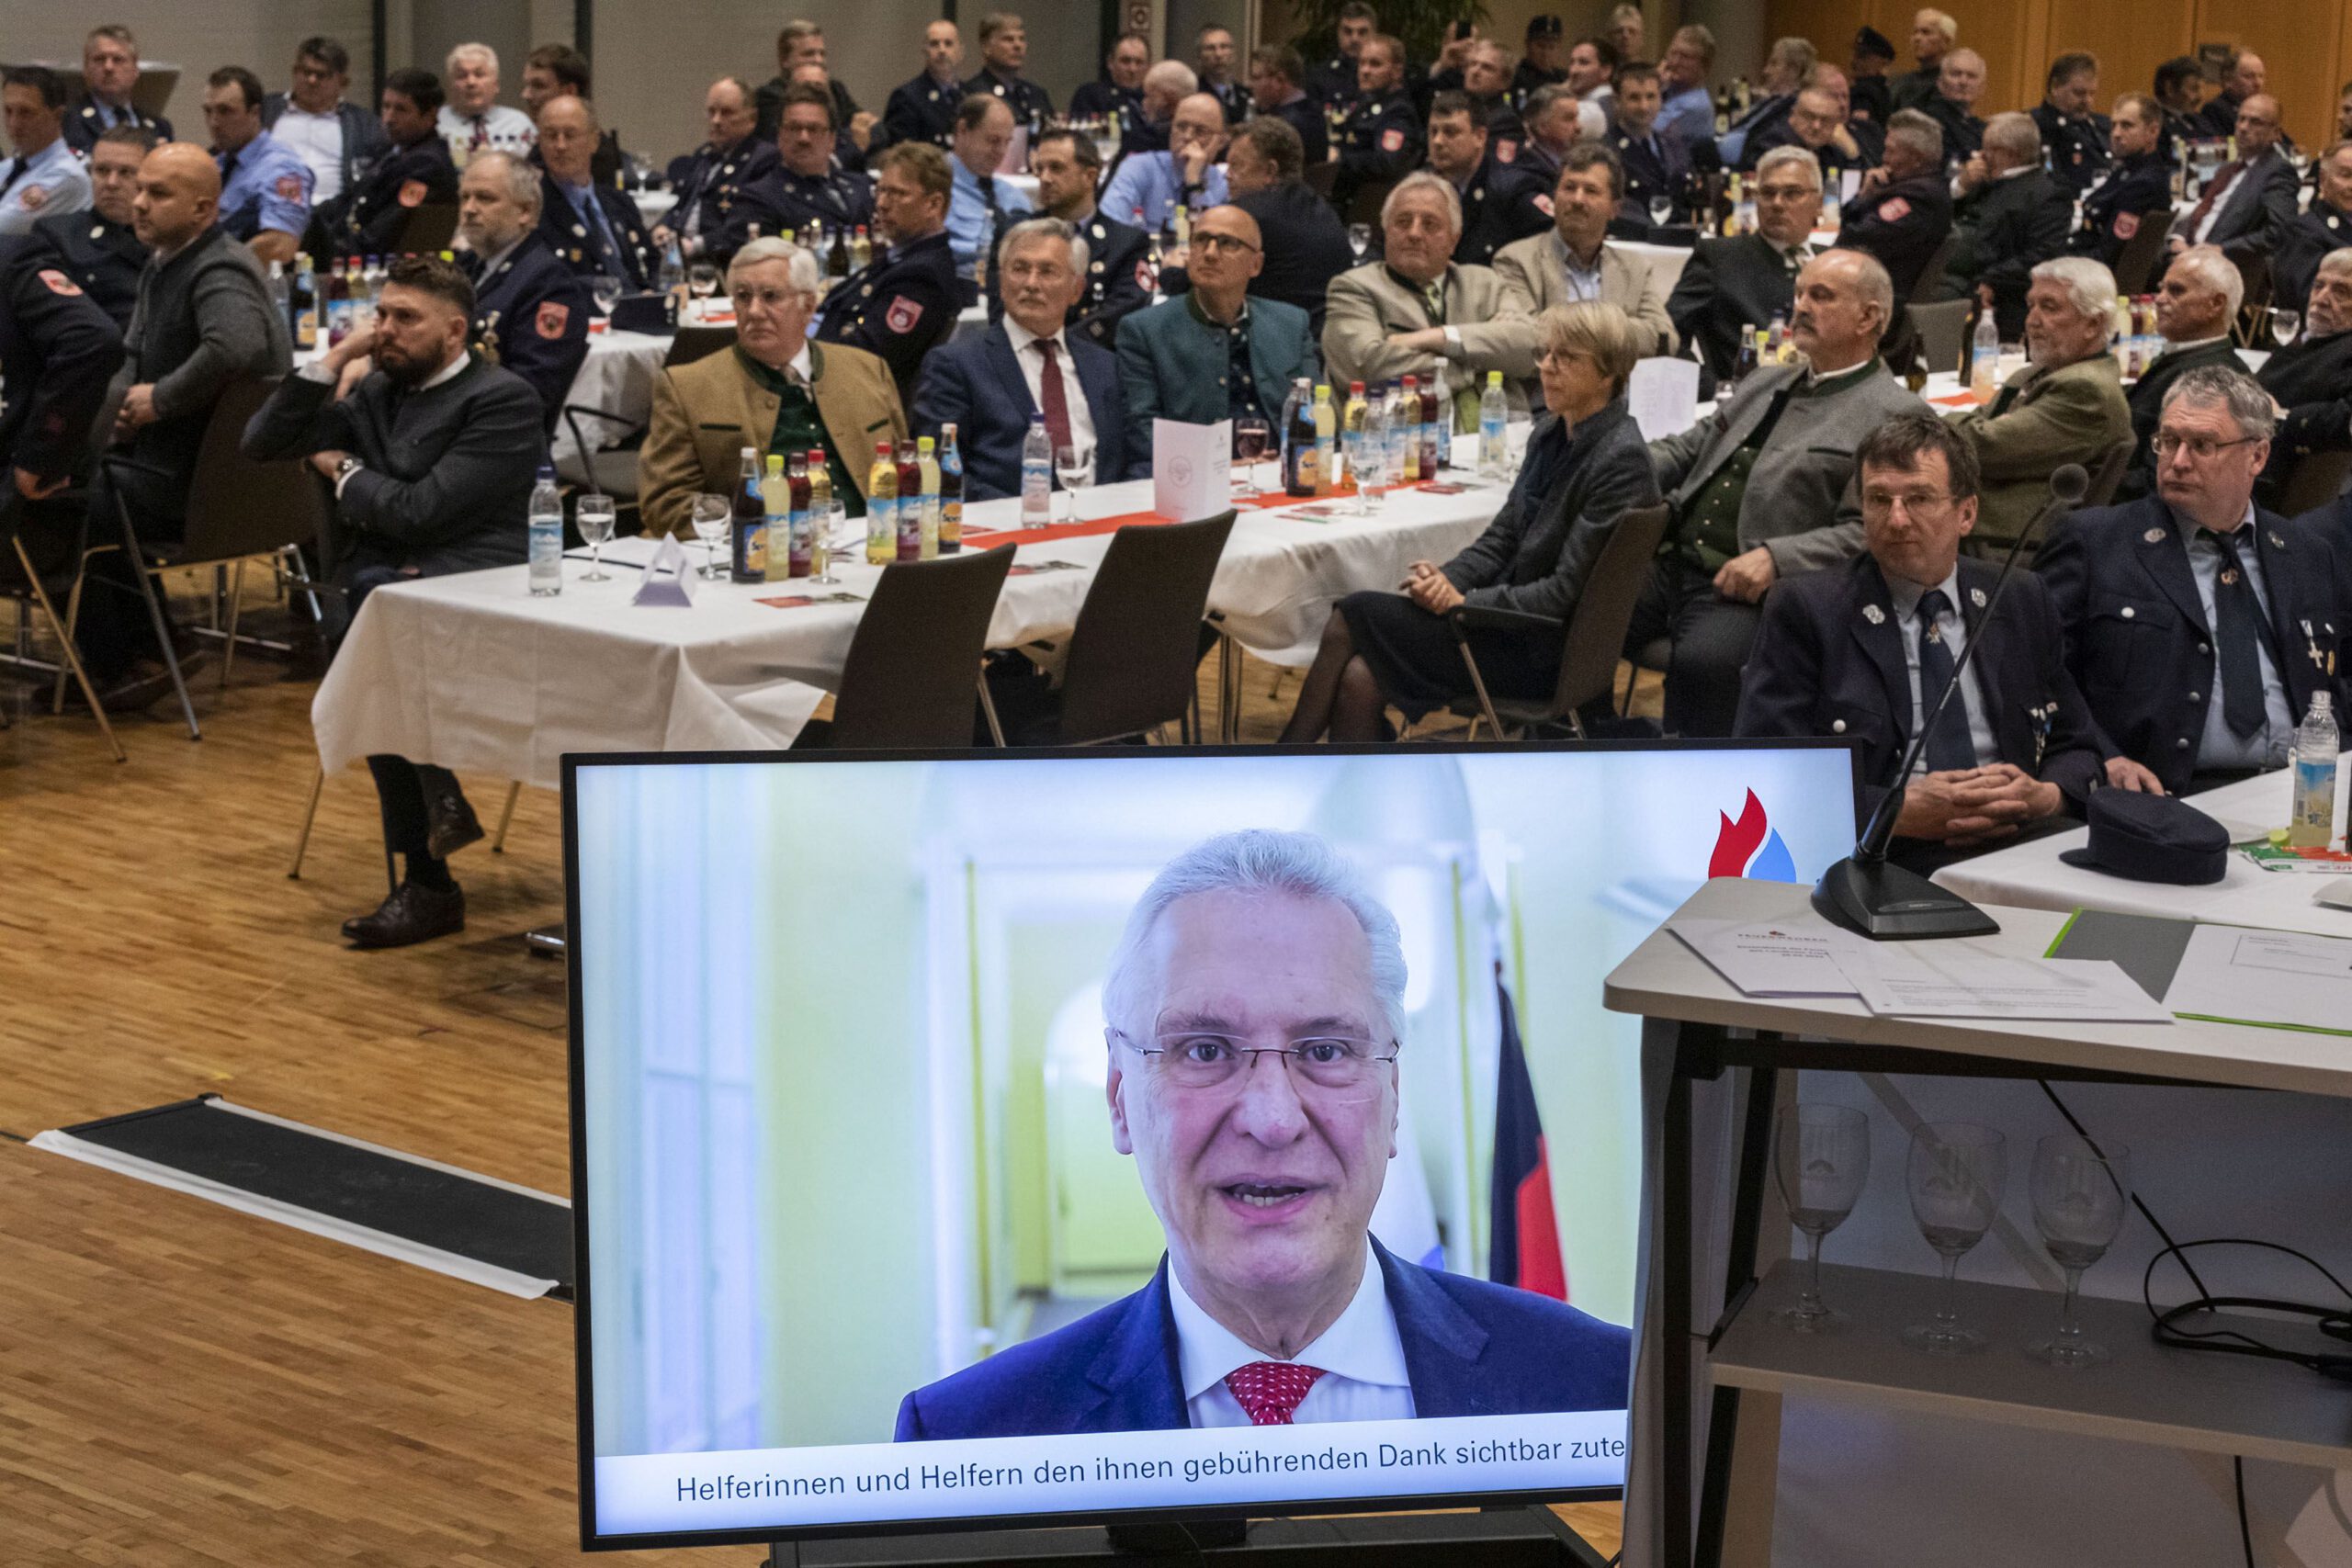 Kreisfeuerwehrverband Traunstein - Ehrung, Blick in den Saal, im Vordergrund Bildschirm. darauf zu sehen der Bayerische Innenminister Joachim Herrmann